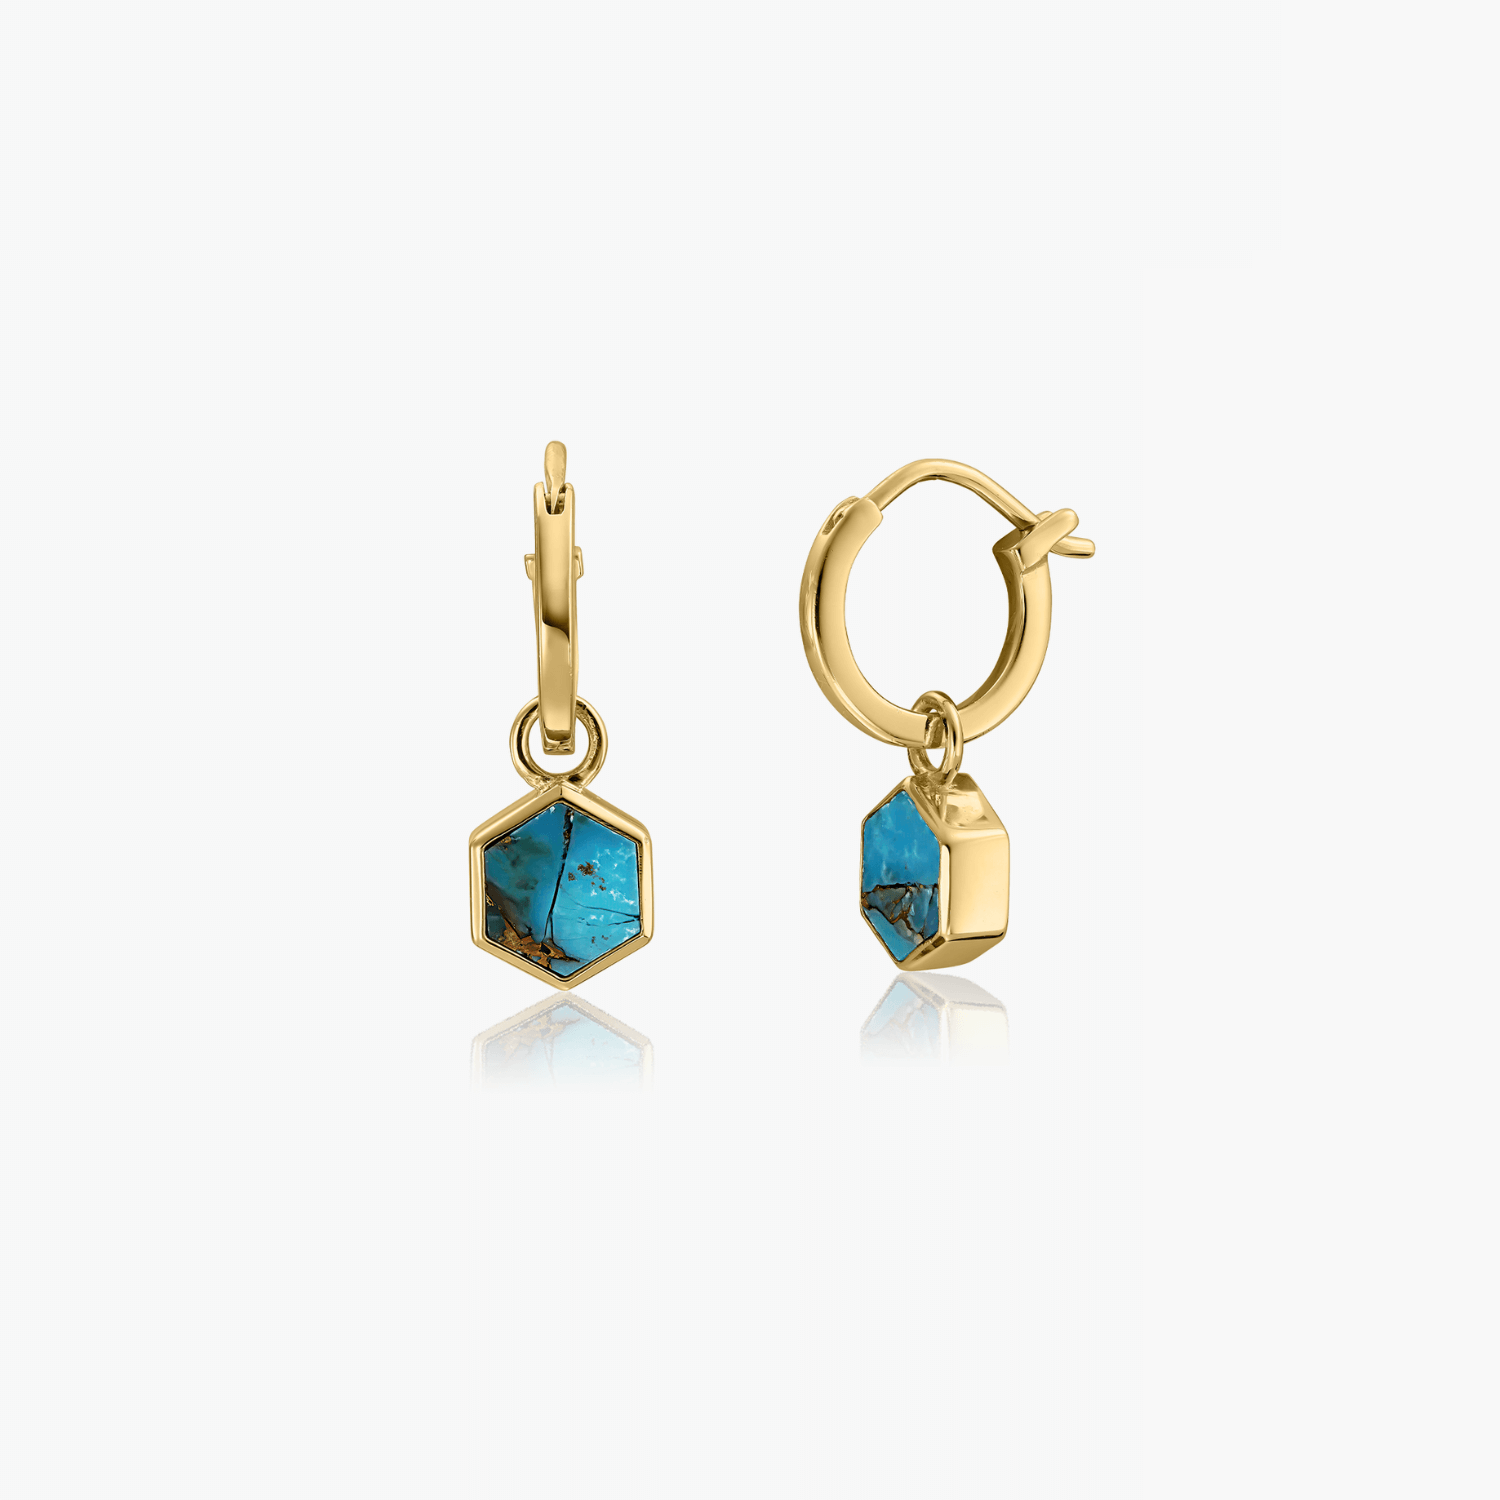 Boucles d'oreilles argent Golden Charlotte - Cuivre Bleu Turquoise